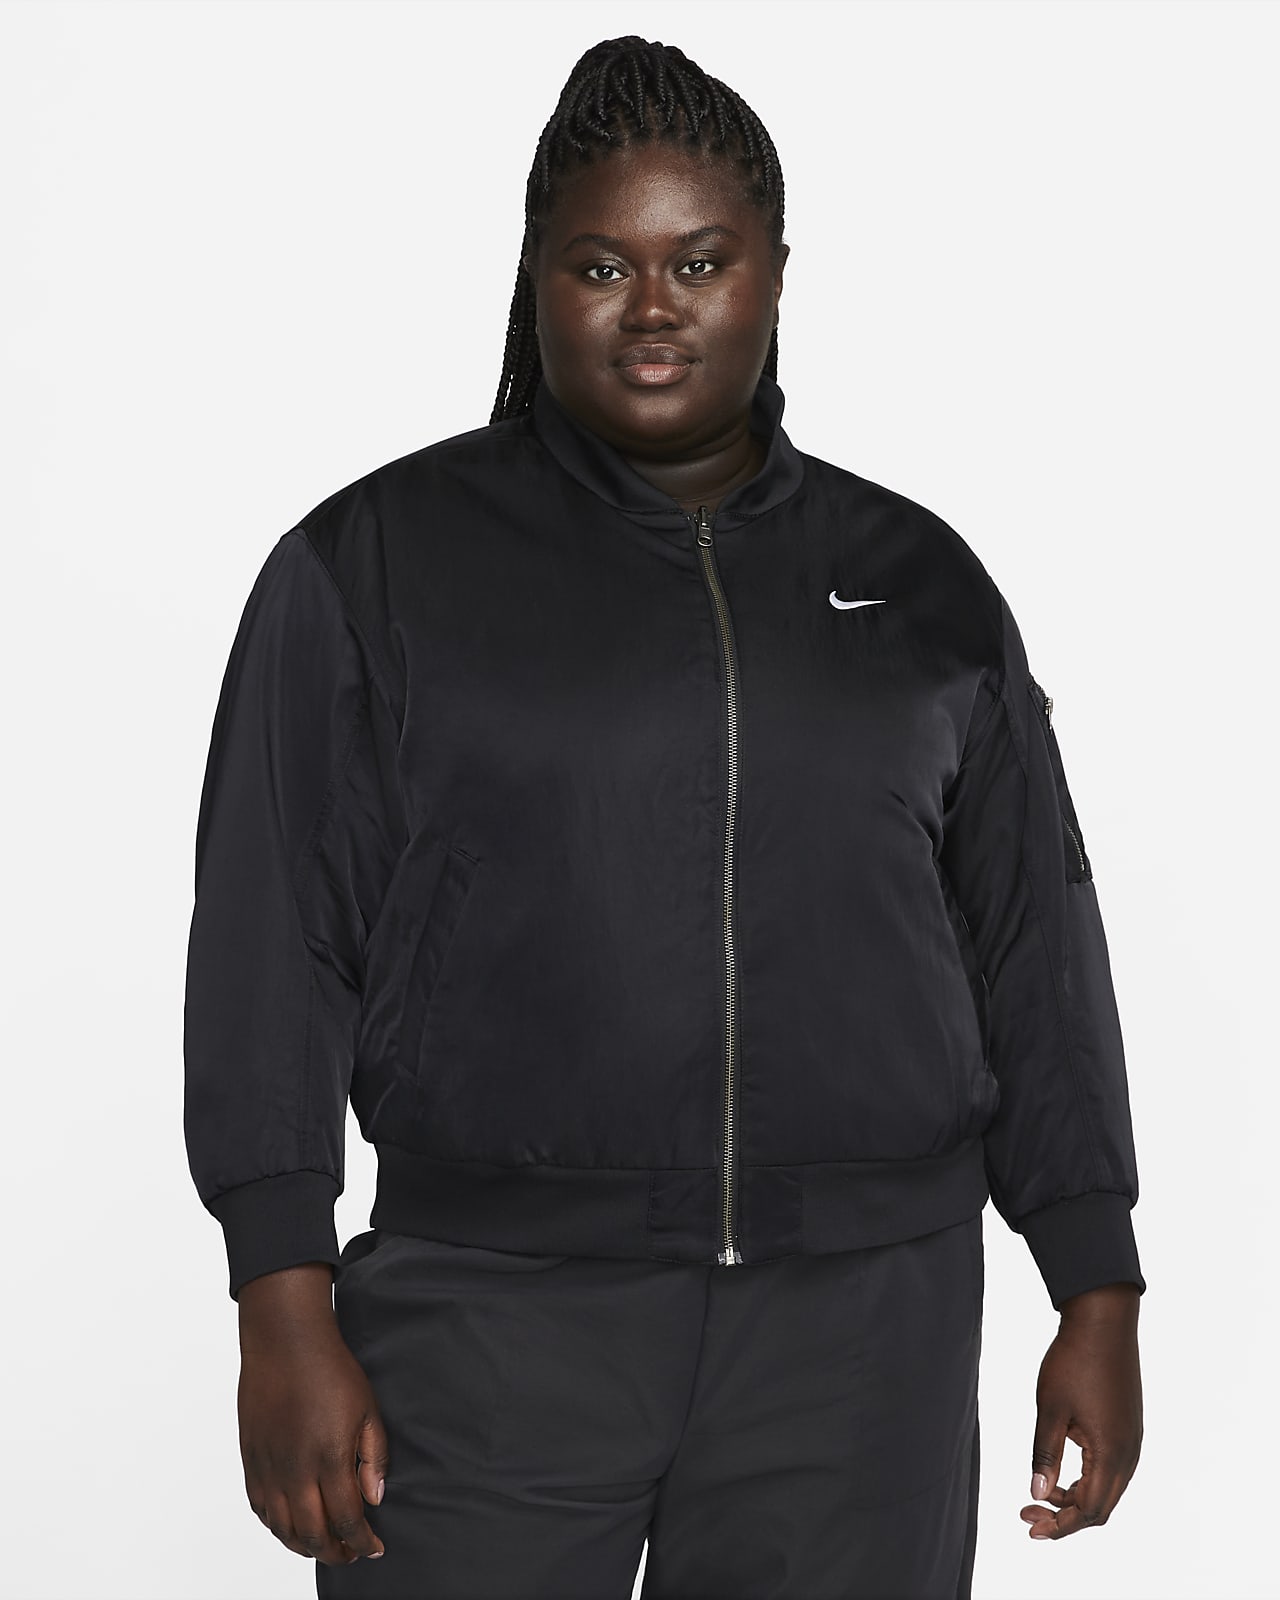 Nike Sportswear Çift Taraflı Kolej Stili Kadın Bomber Ceketi (Büyük Beden)